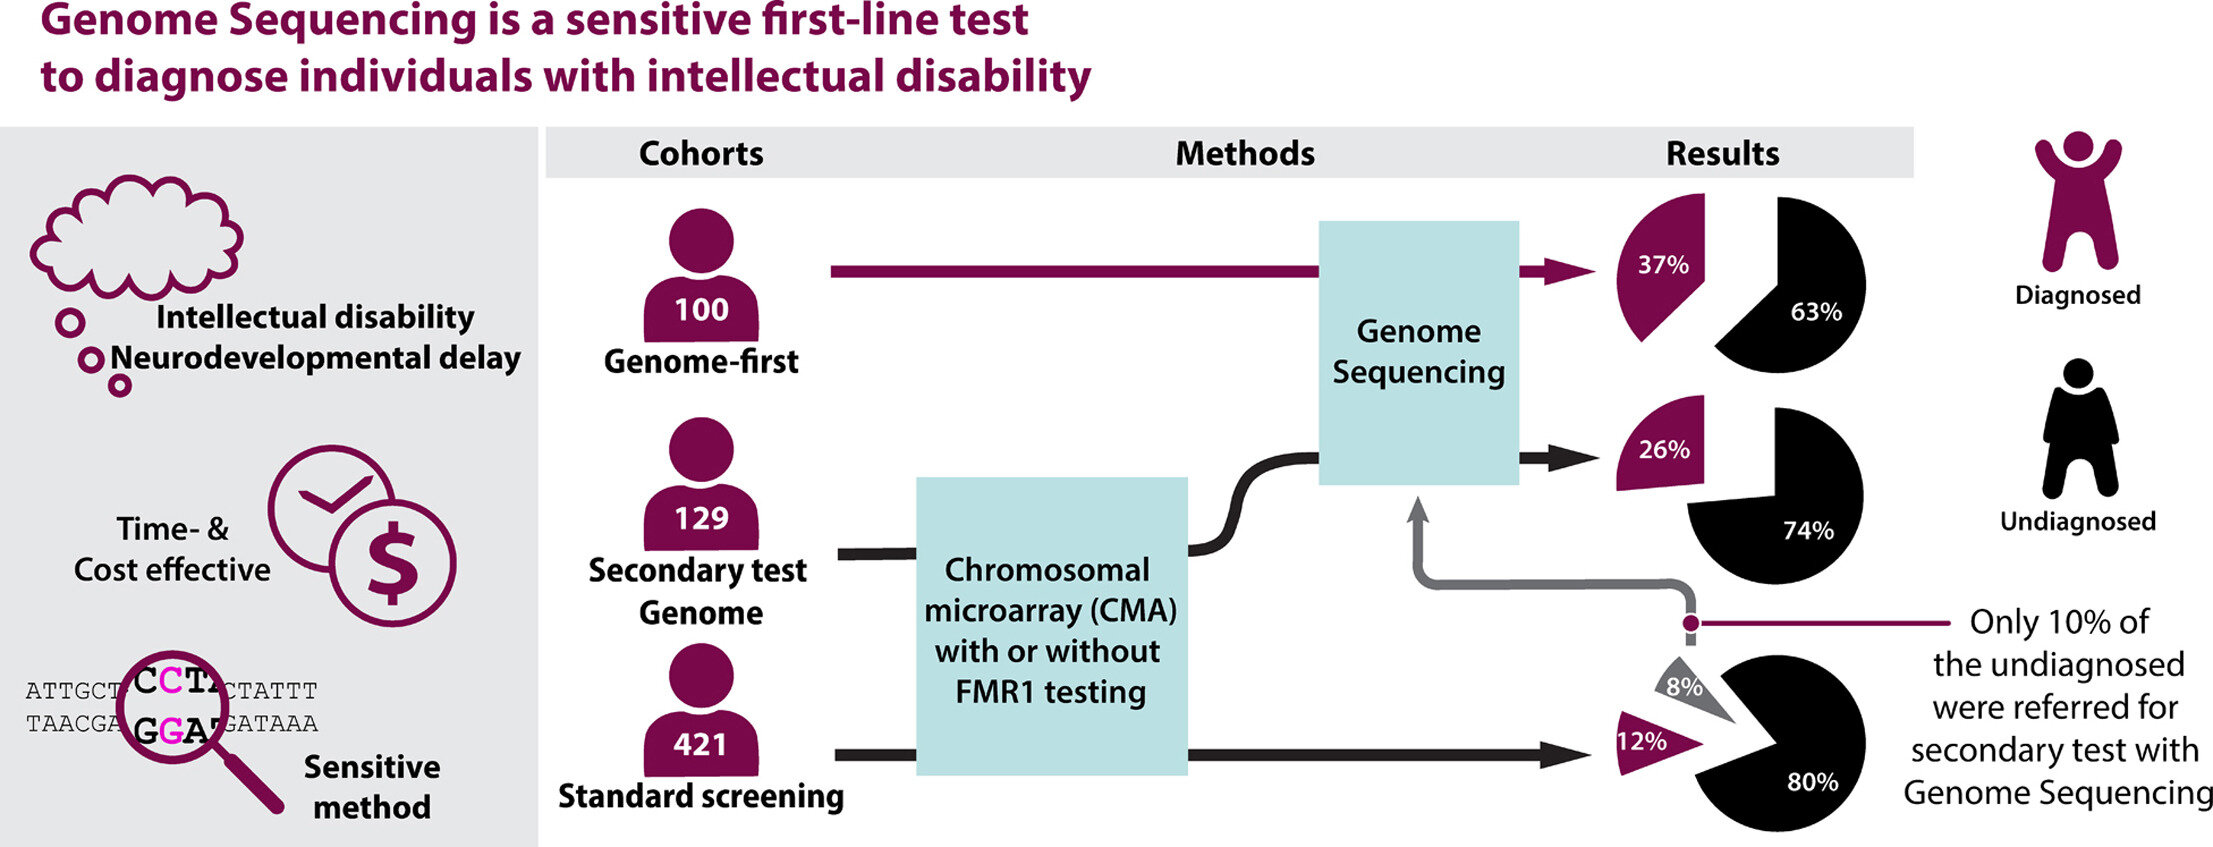 Genoomsequencing als eerstelijnstest voor het diagnosticeren van een verstandelijke beperking